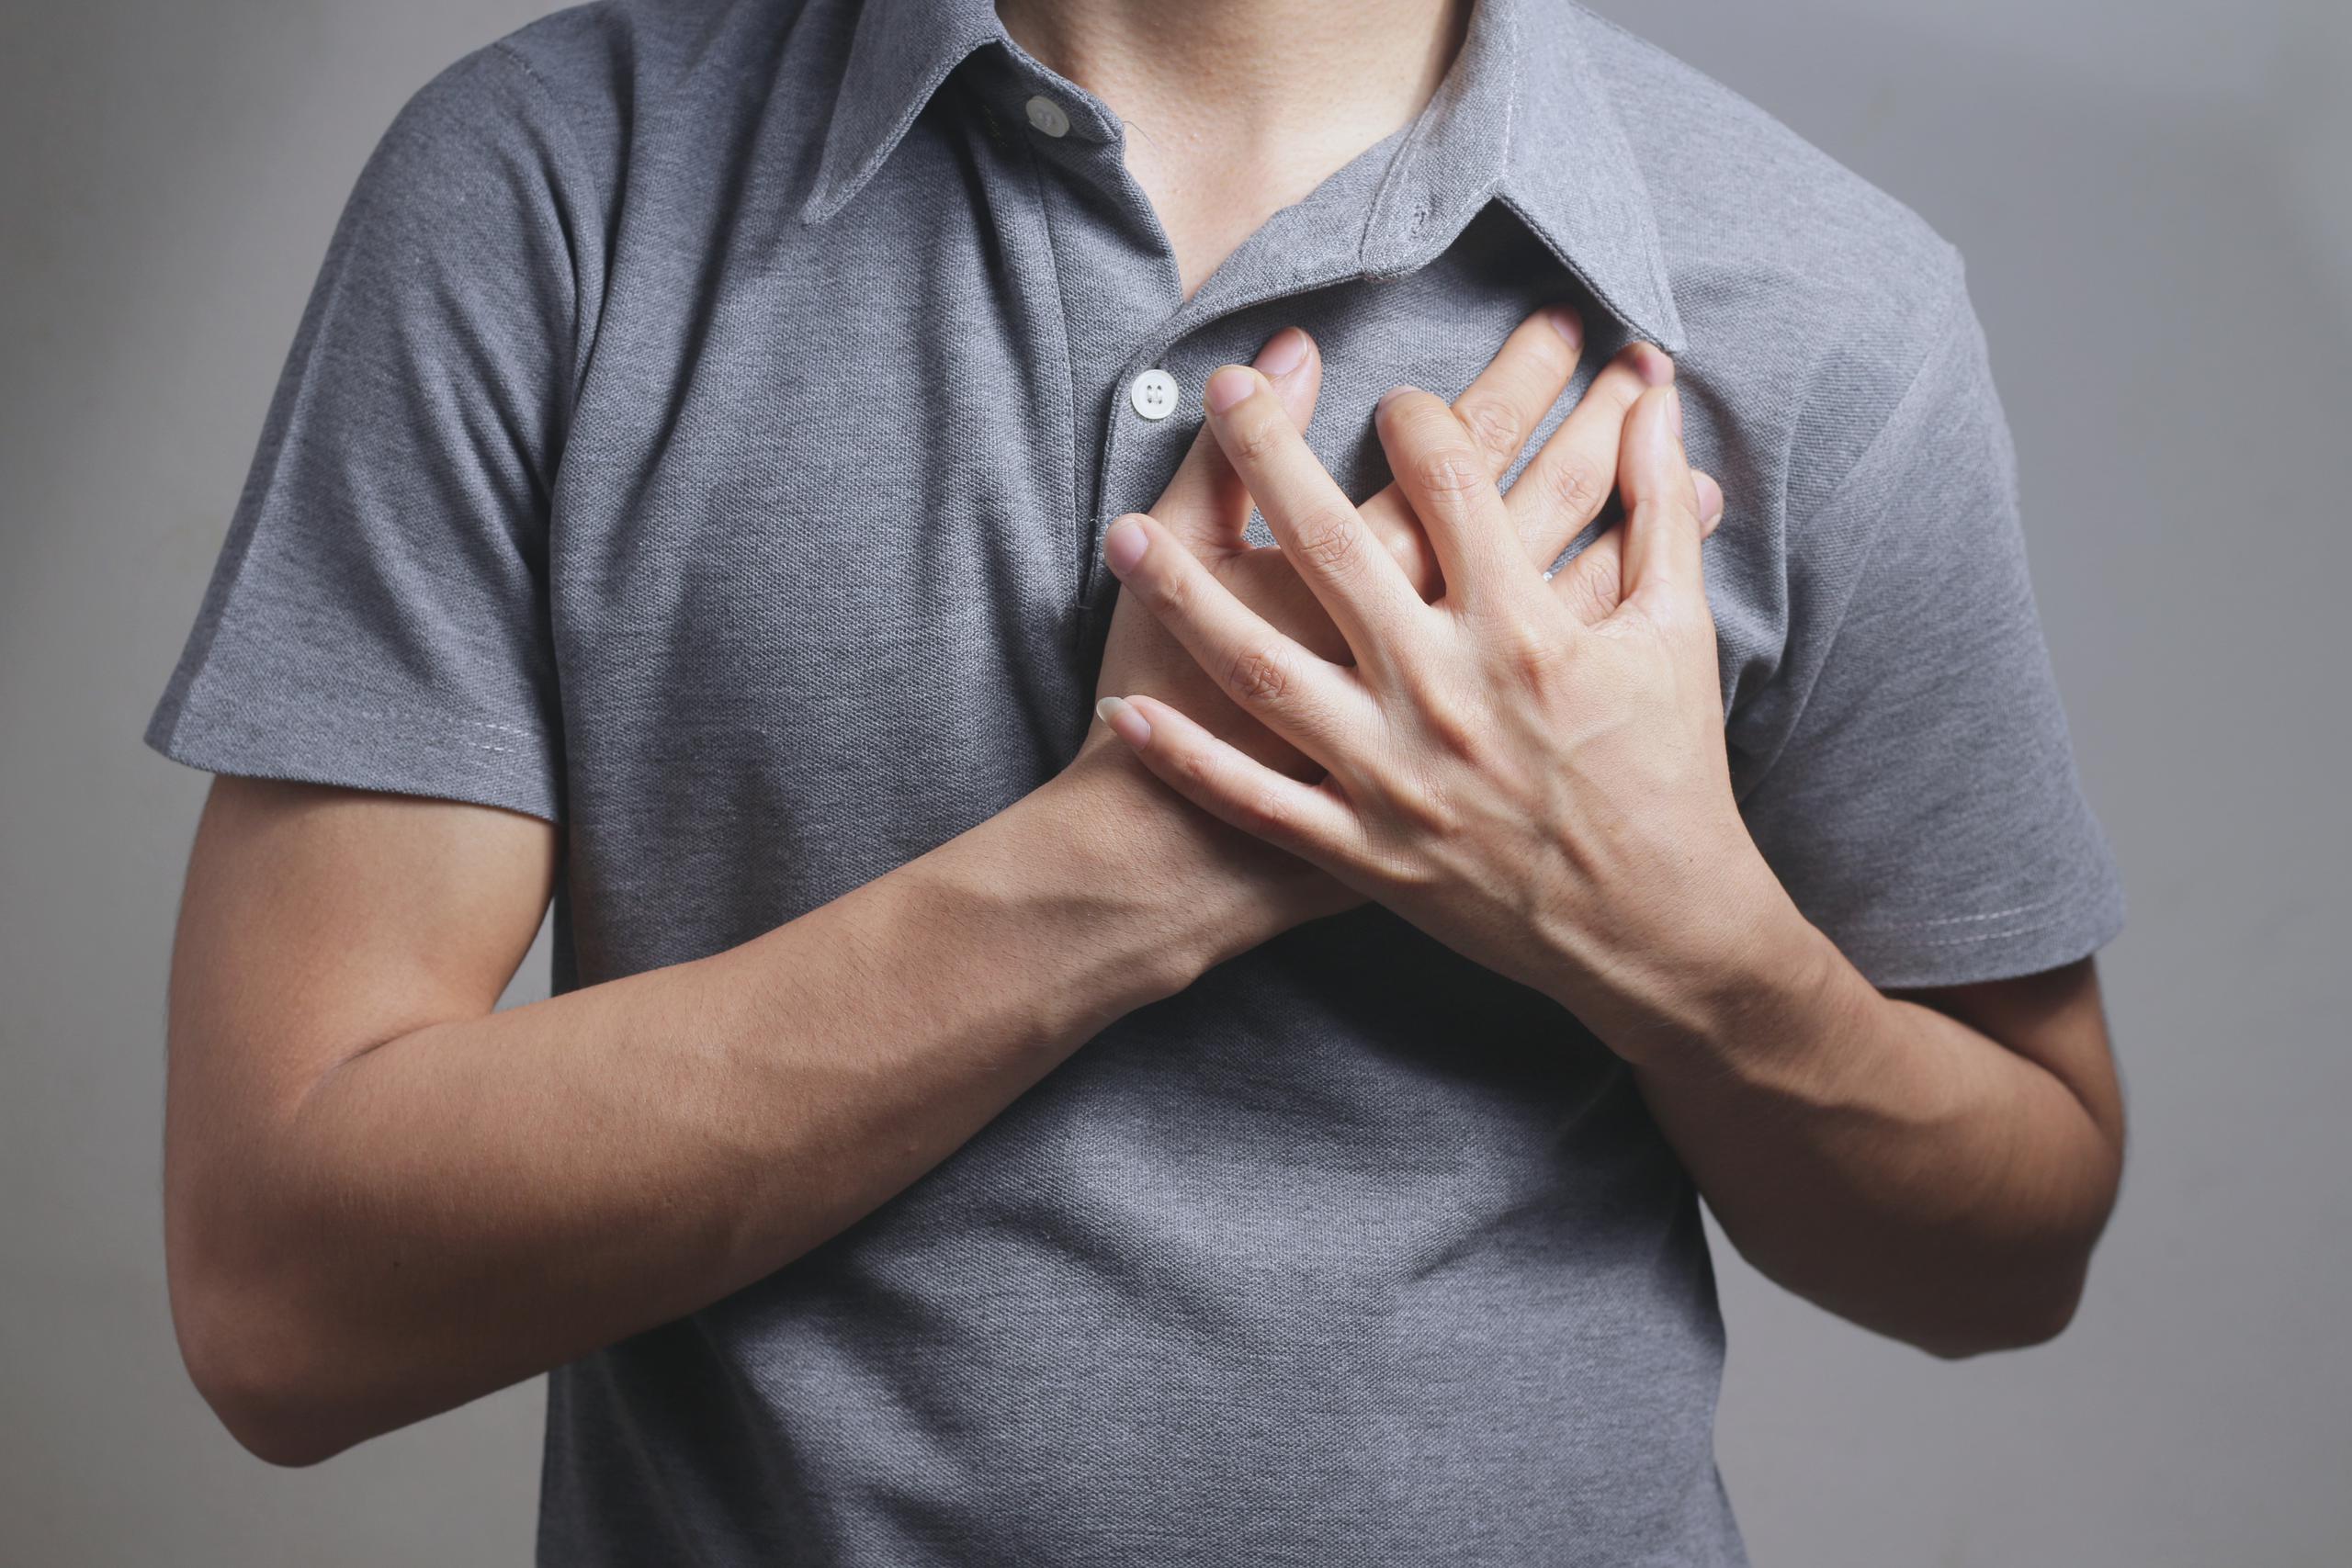 Las arritmias son alteraciones en el funcionamiento de la red eléctrica del corazón que modifican el ritmo cardíaco y tienen repercusión en la función de bombeo de este órgano, disminuyendo su eficacia.